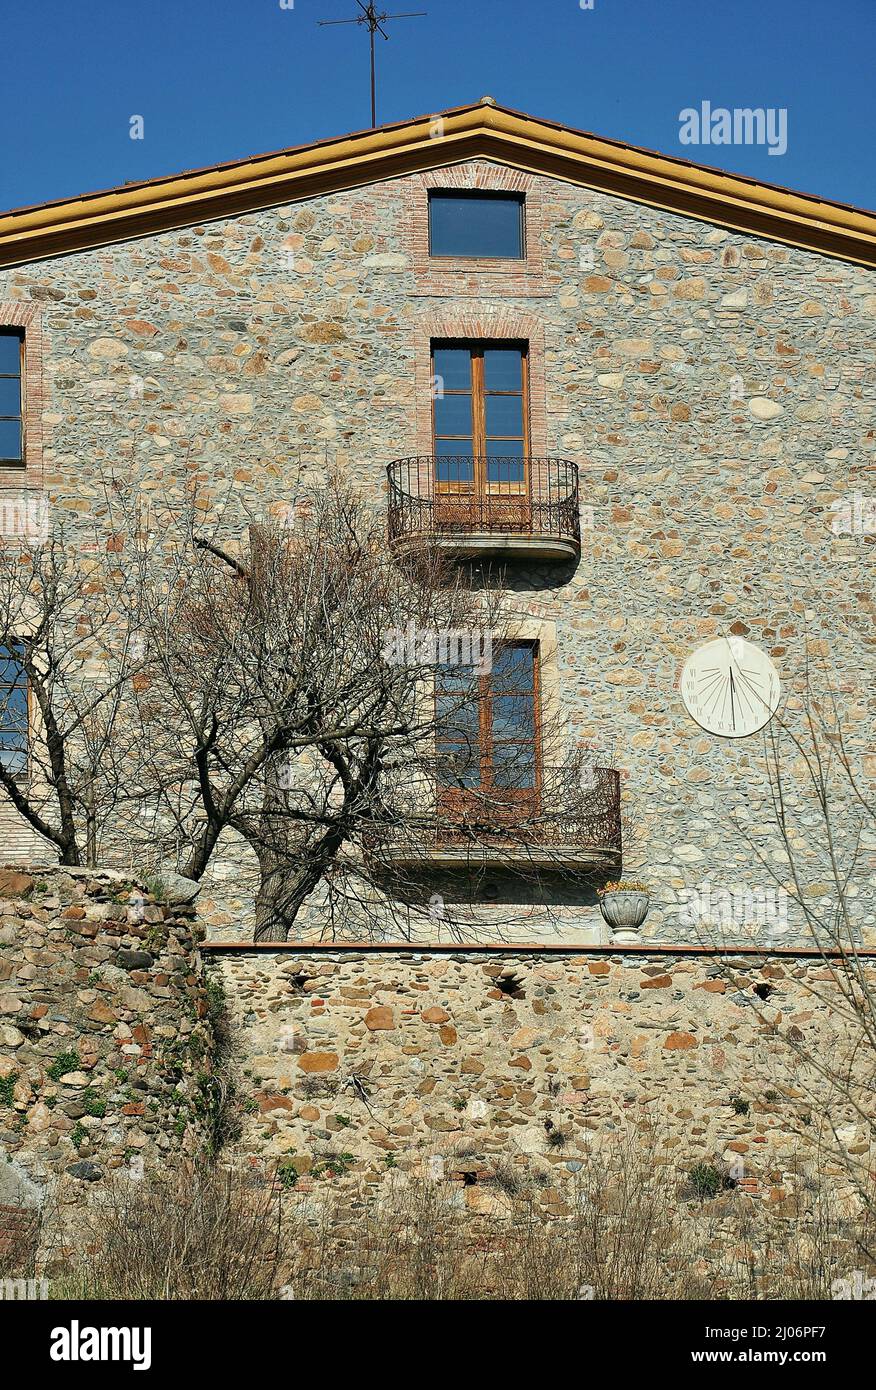 Casa colonica di Can Draper a Sant Celoni nella regione di Vàlles provincia orientale di Barcellona,Catalogna,Spagna Foto Stock